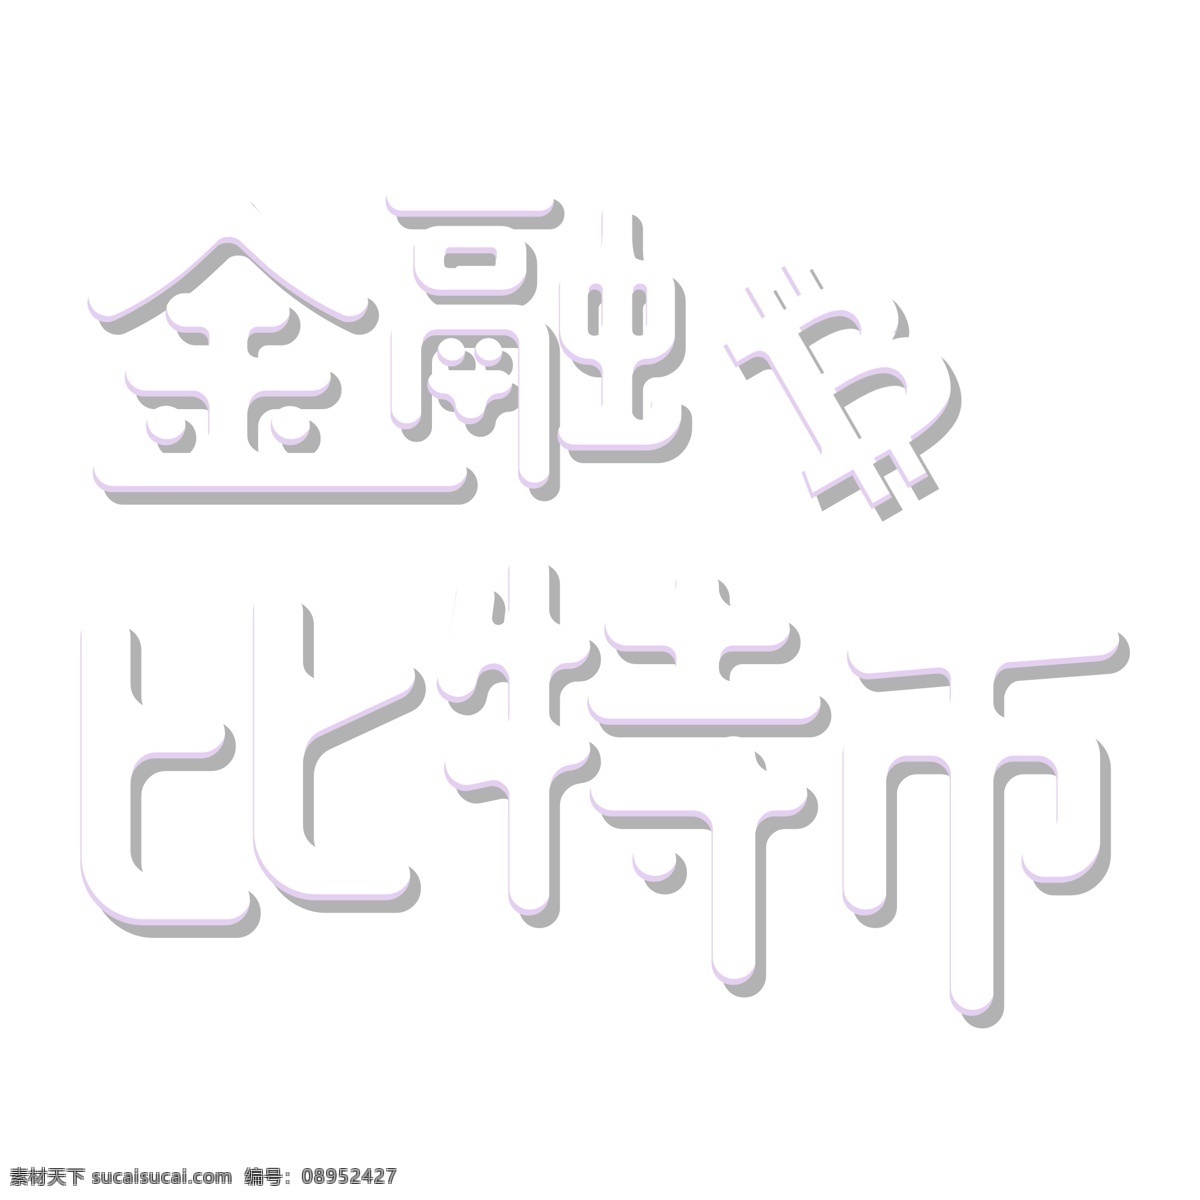 白色 金融 比特 币 艺术 字 元素 字体设计 png元素 金融比特币 艺术字 立体字设计